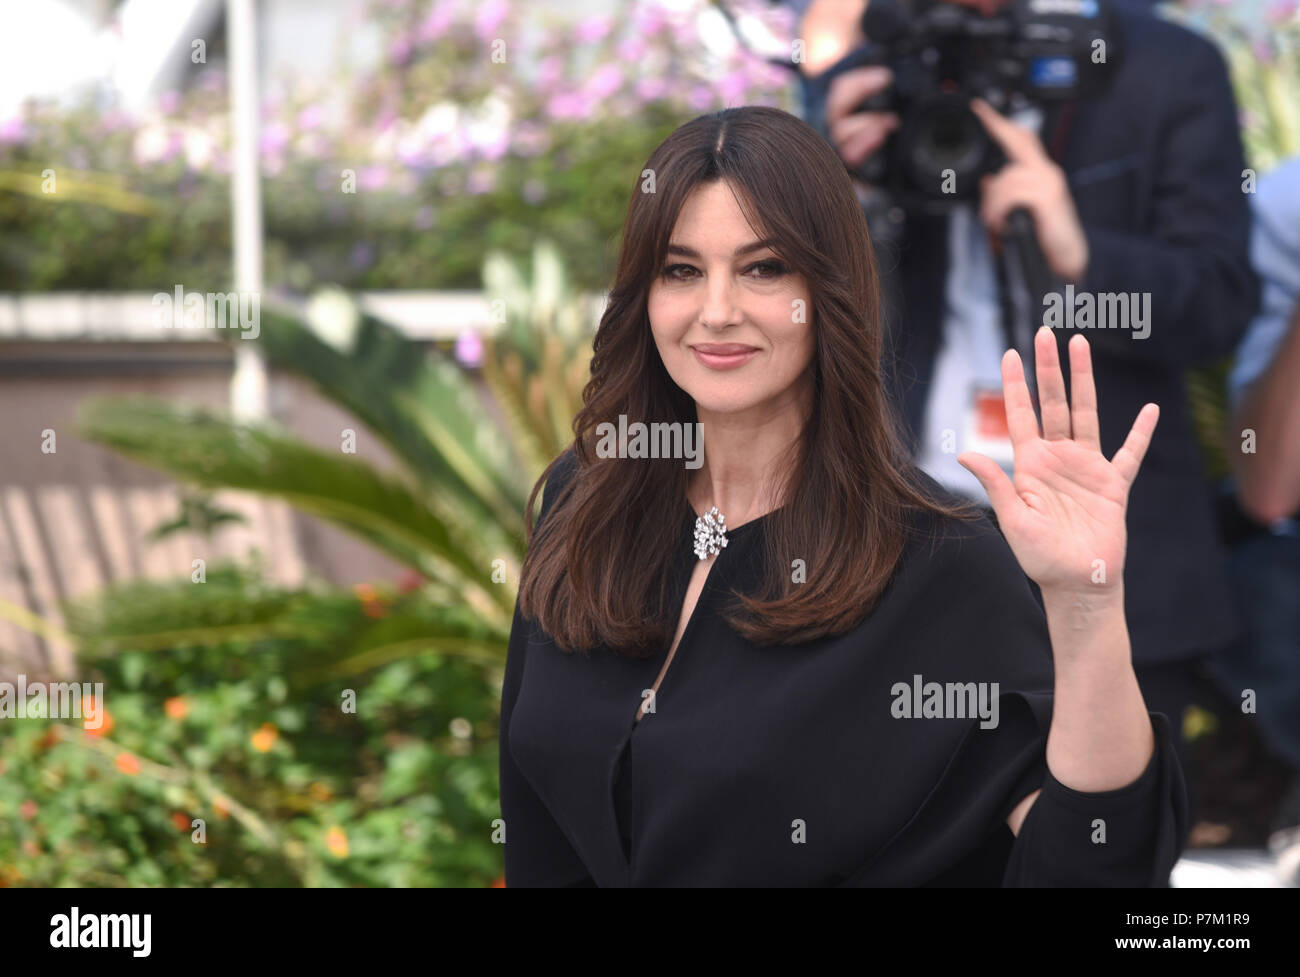 Mai 17, 2017 - Paris, Frankreich: Monica Bellucci besucht einen Fotoauftrag während des 70. Filmfestival in Cannes. Monica Bellucci lors du 70eme Festival de Cannes. *** Frankreich/KEINE VERKÄUFE IN DEN FRANZÖSISCHEN MEDIEN *** Stockfoto